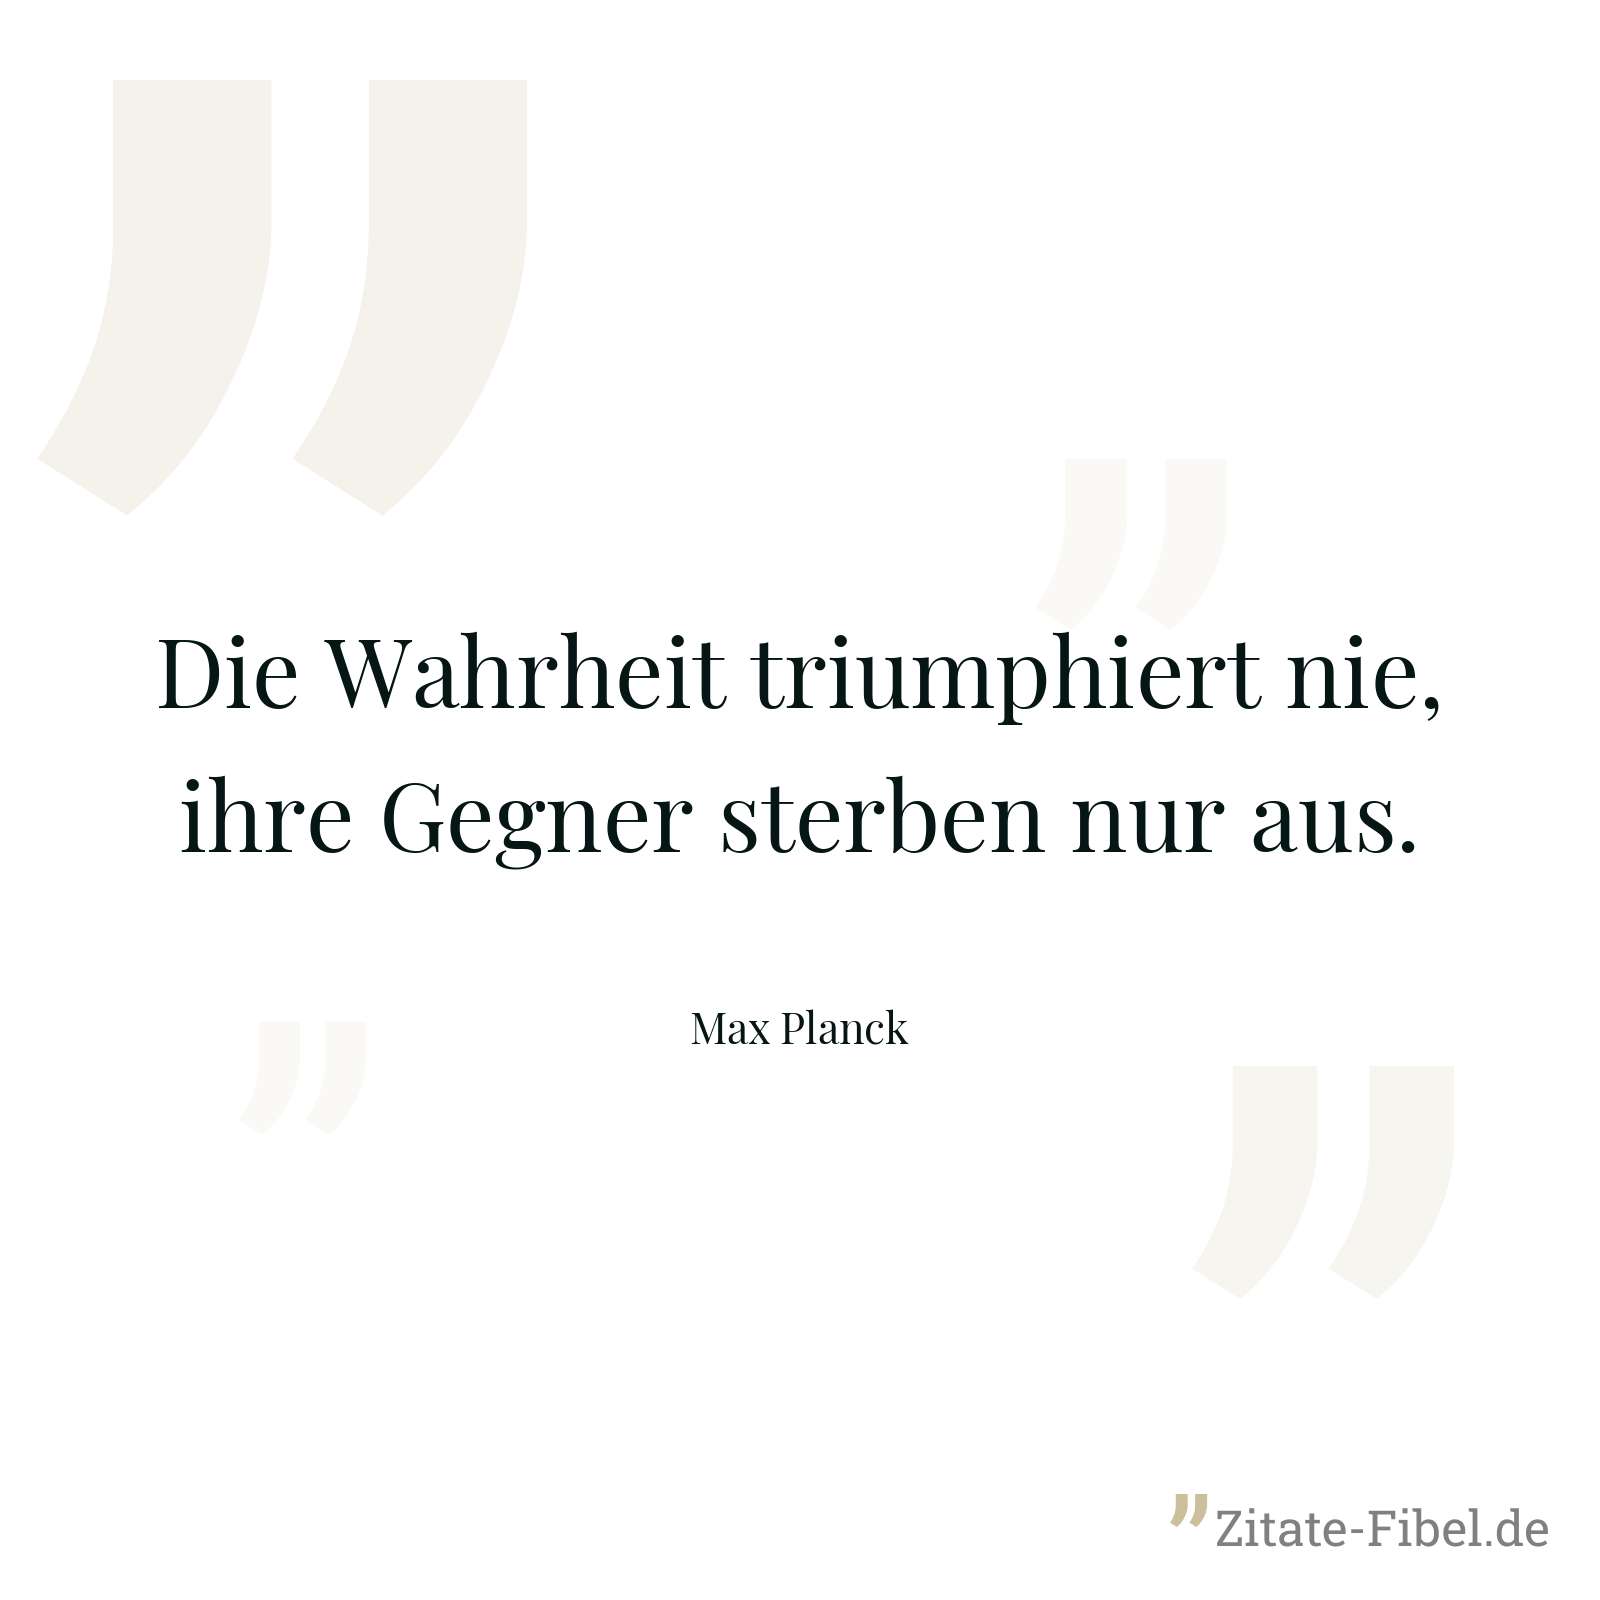 Die Wahrheit triumphiert nie, ihre Gegner sterben nur aus. - Max Planck